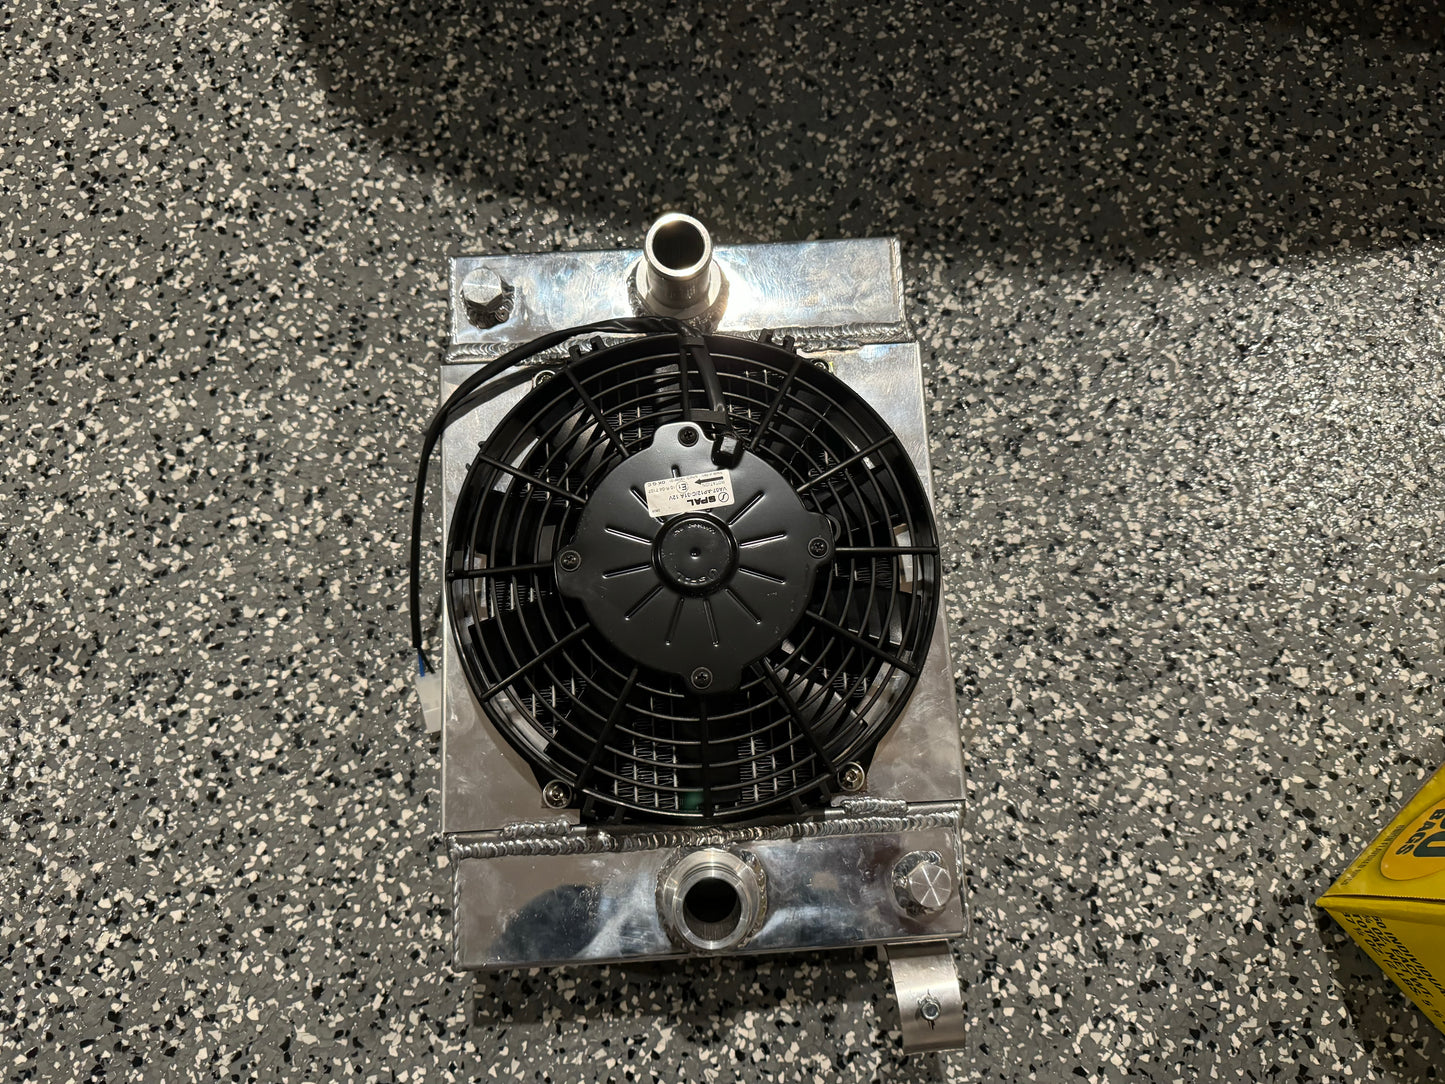 Plm race radiator with spal fan